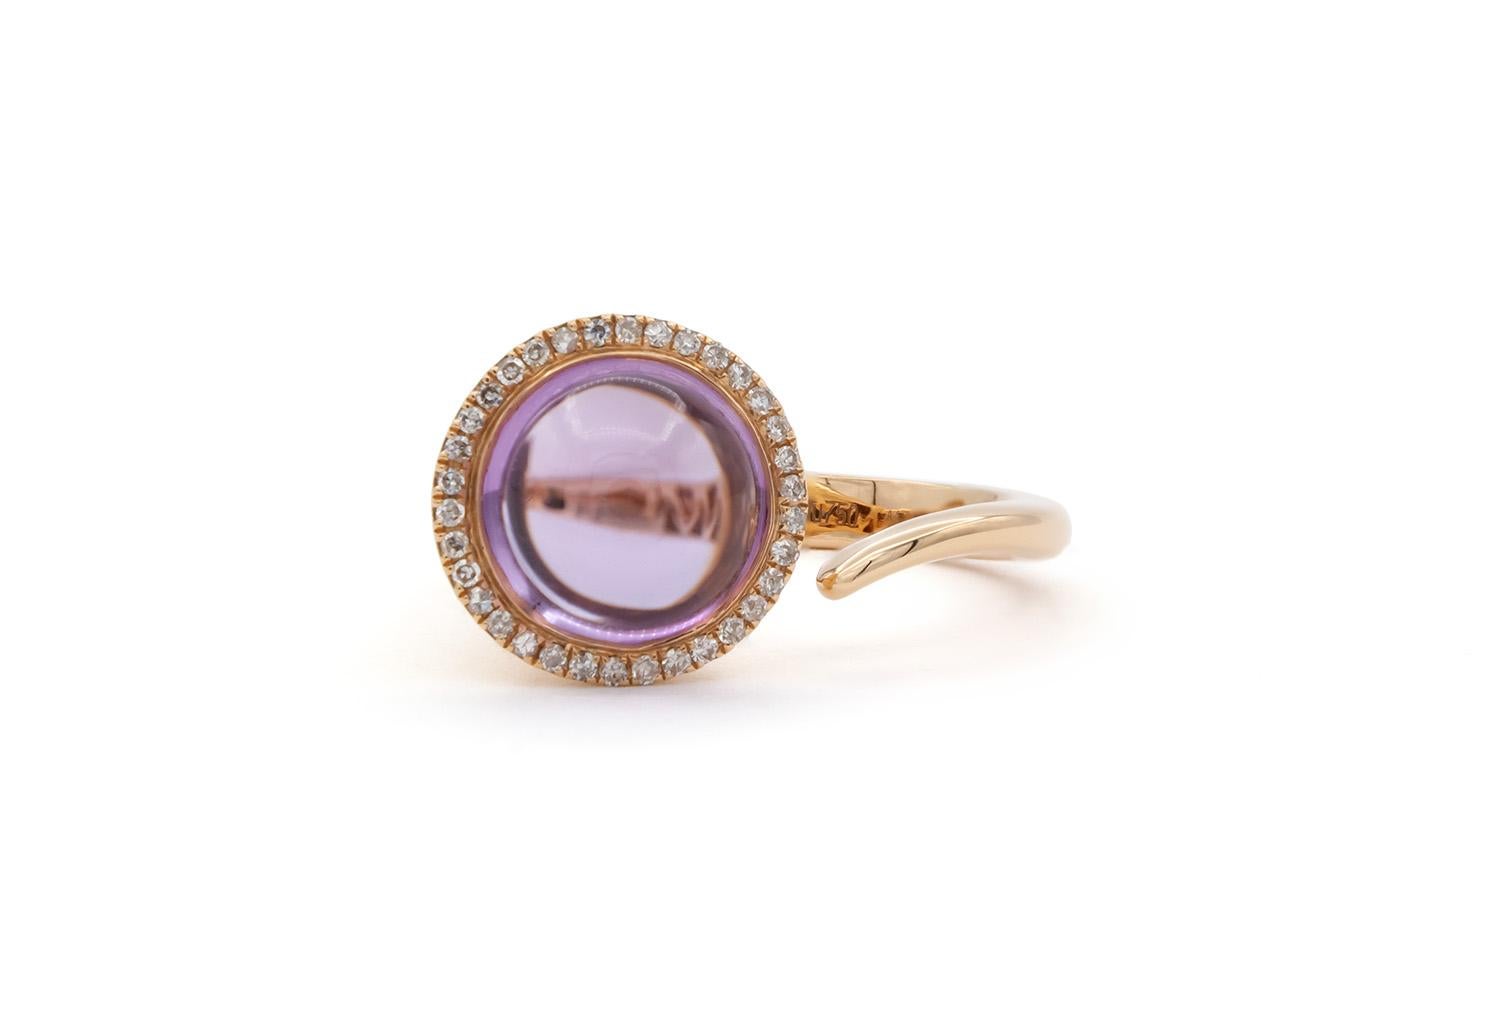 Wir freuen uns, dieses brandneue ungetragene Forever 18k Rose Gold Purple Amethyst & Diamond Cocktail Fashion Ring anzubieten. Dieser atemberaubende Ring zeigt einen 4,04ct Cabochon-Schliff natürlichen lila Amethyst akzentuiert durch 0,145ctw runde